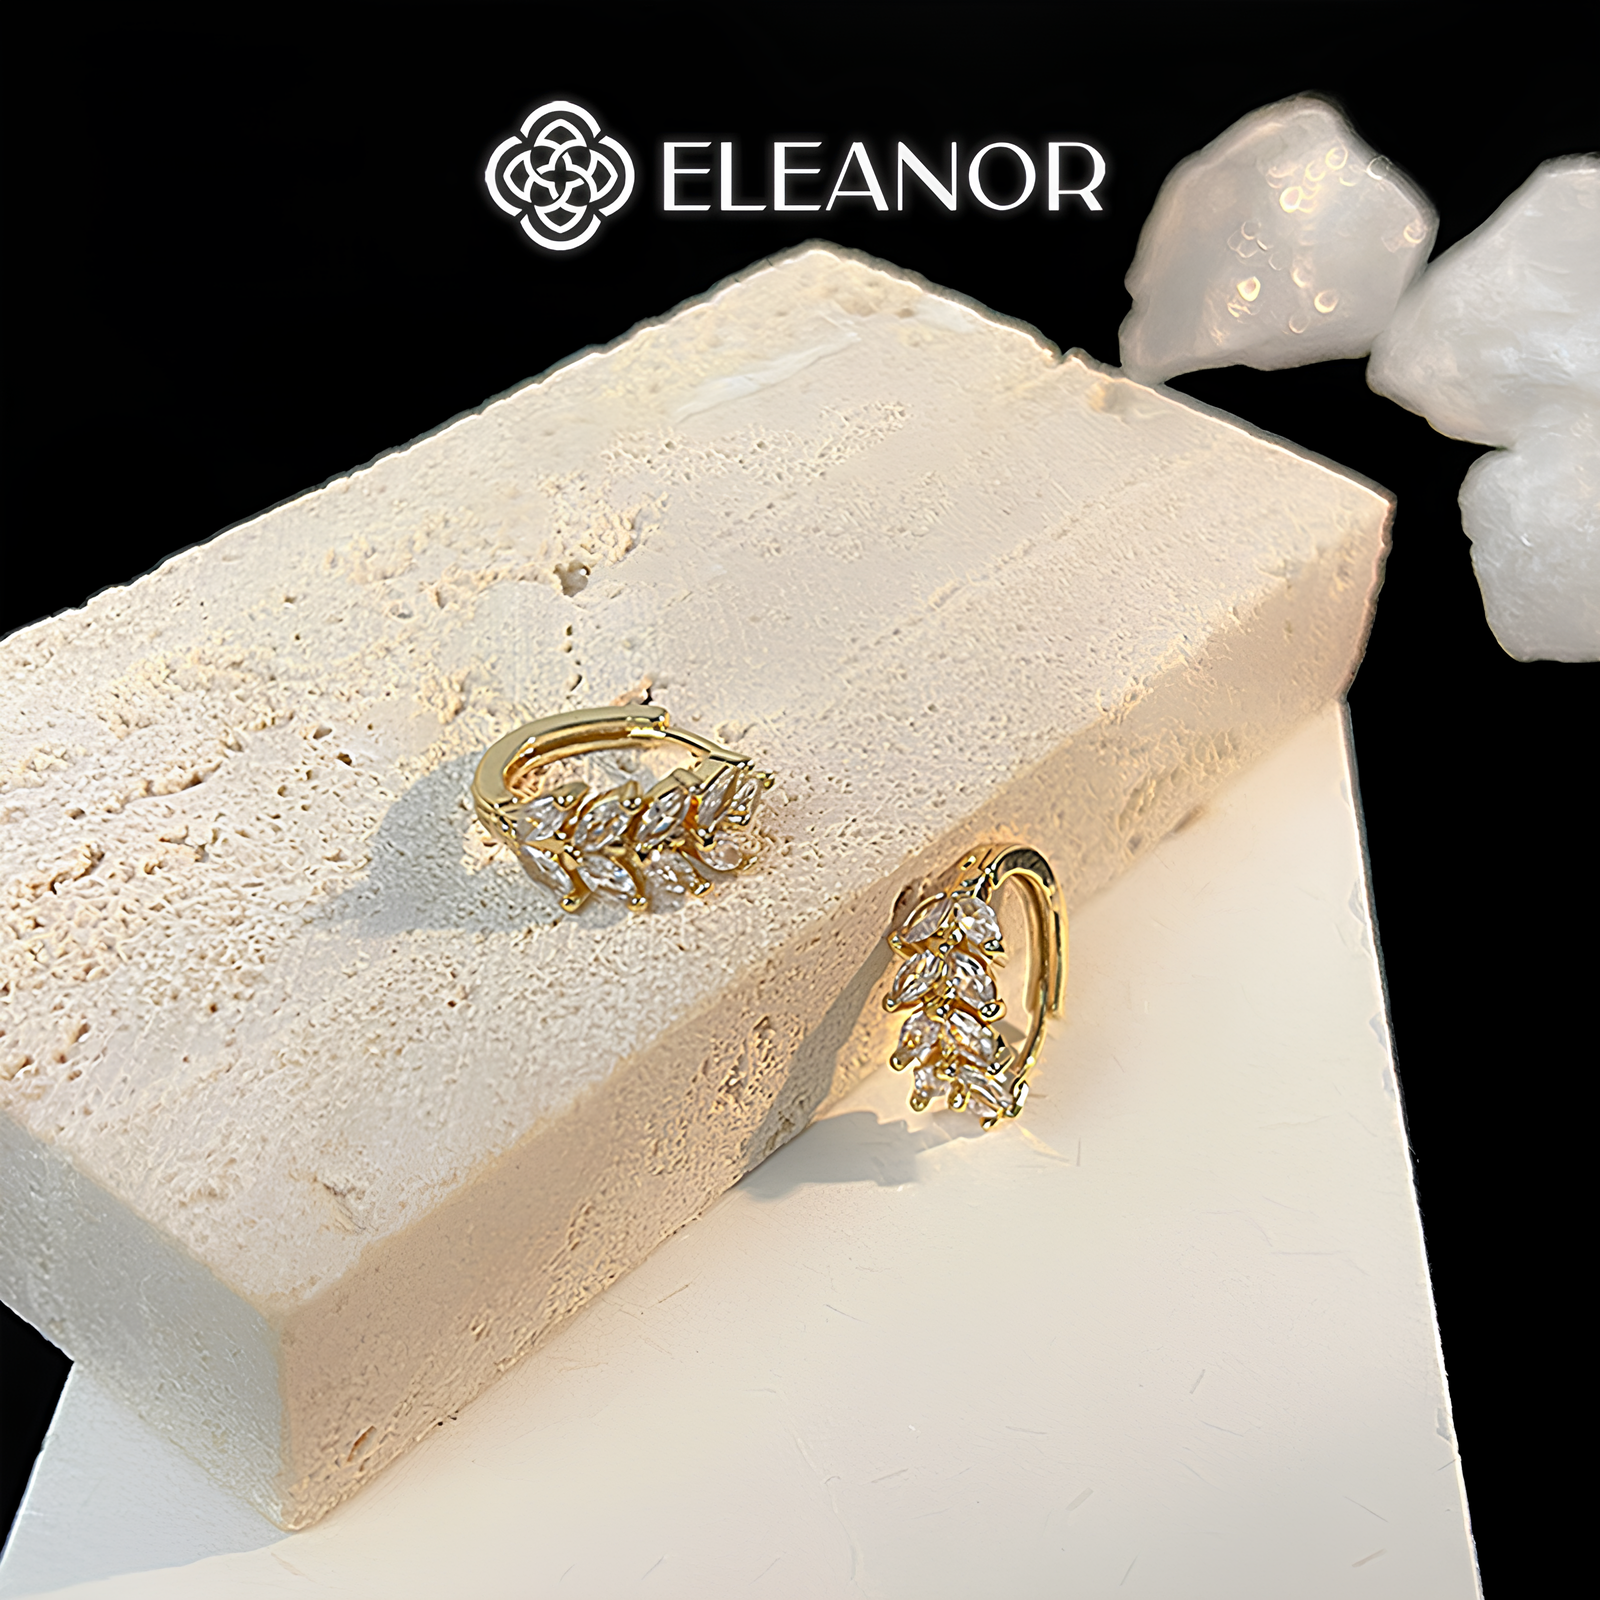 Bông tai nữ chuôi bạc 925 Eleanor Accessories khuyên tai hình chiếc lá đính đá phụ kiện trang sức 6283